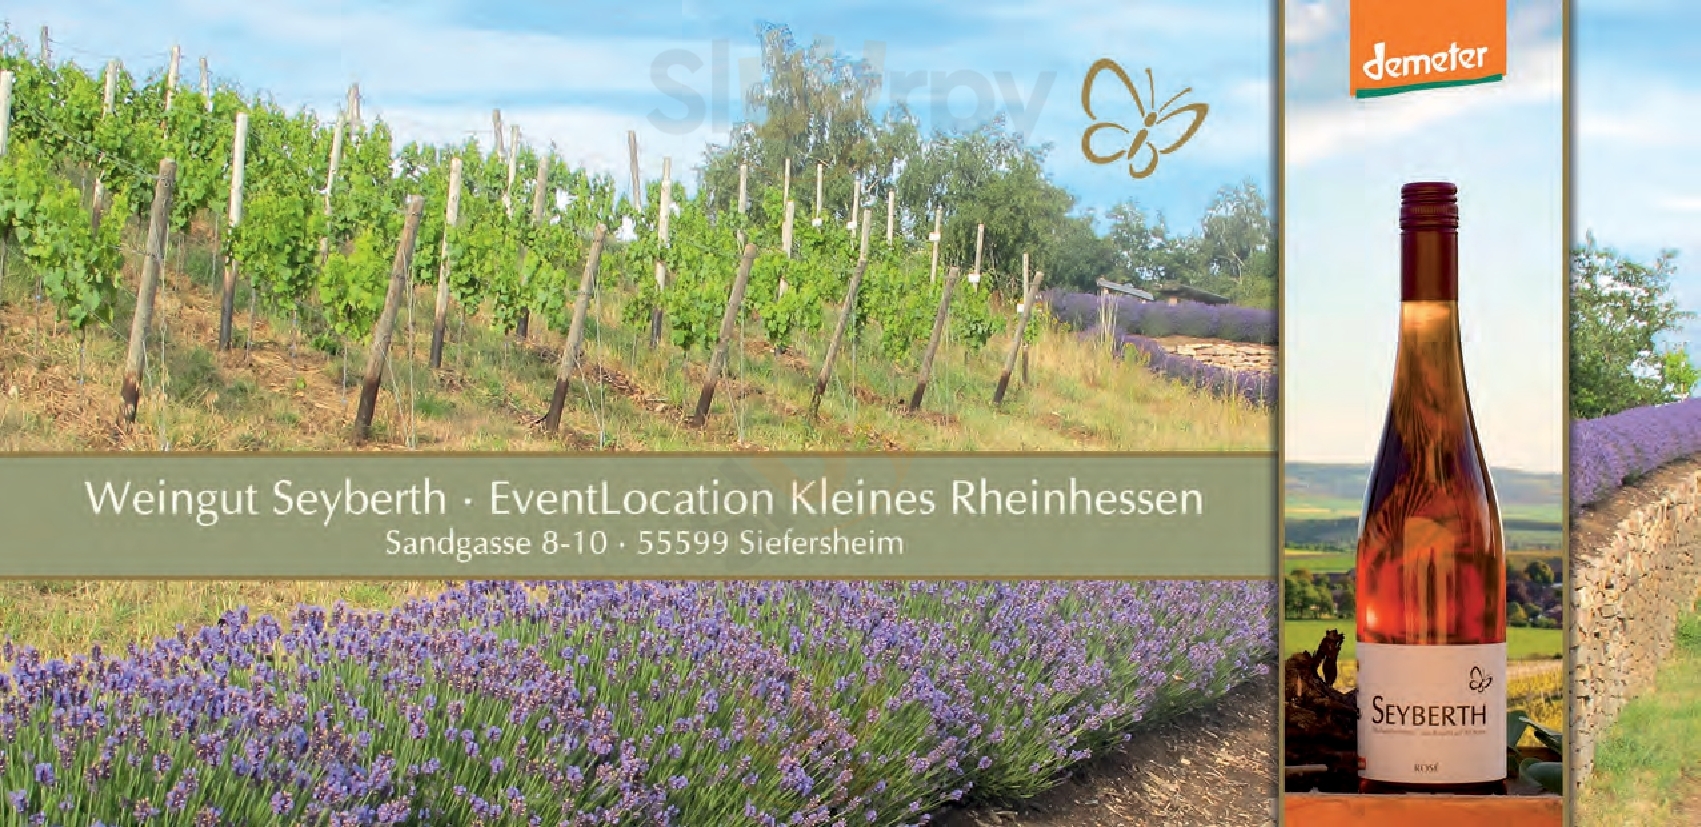 Weinstube Kleines Rheinhessen Siefersheim Menu - 1